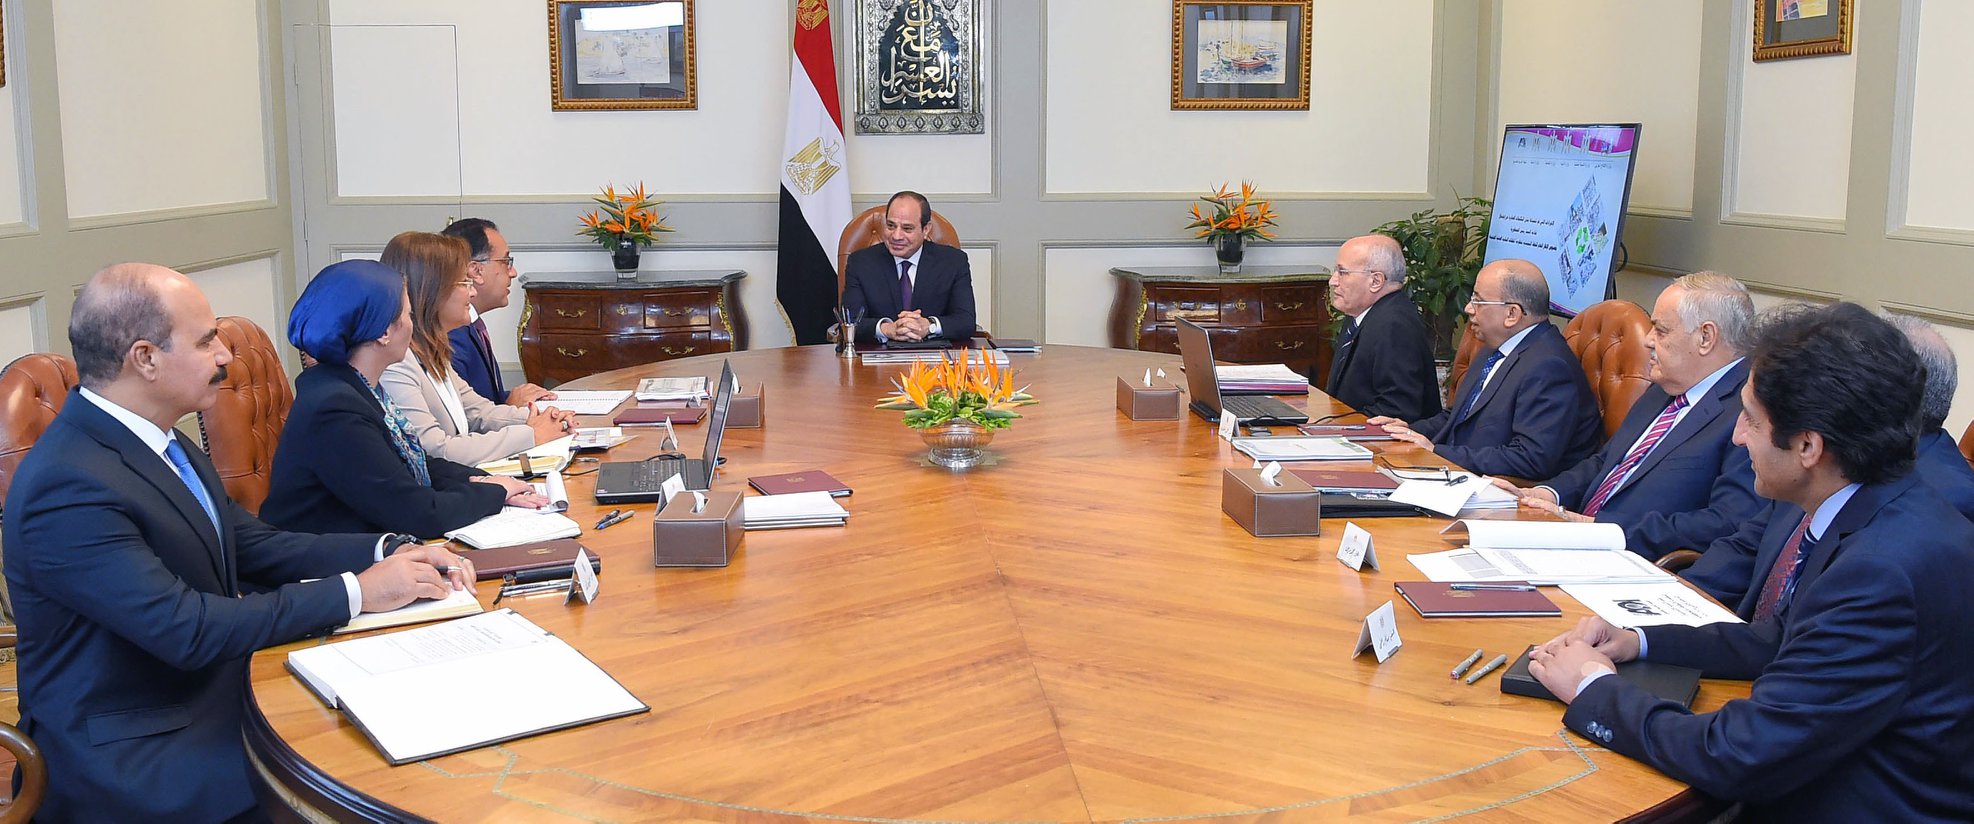   بسام راضى: الرئيس السيسى يتابع تنفيذ برنامج تنمية الصعيد بتكلفة 18 مليار جنيه